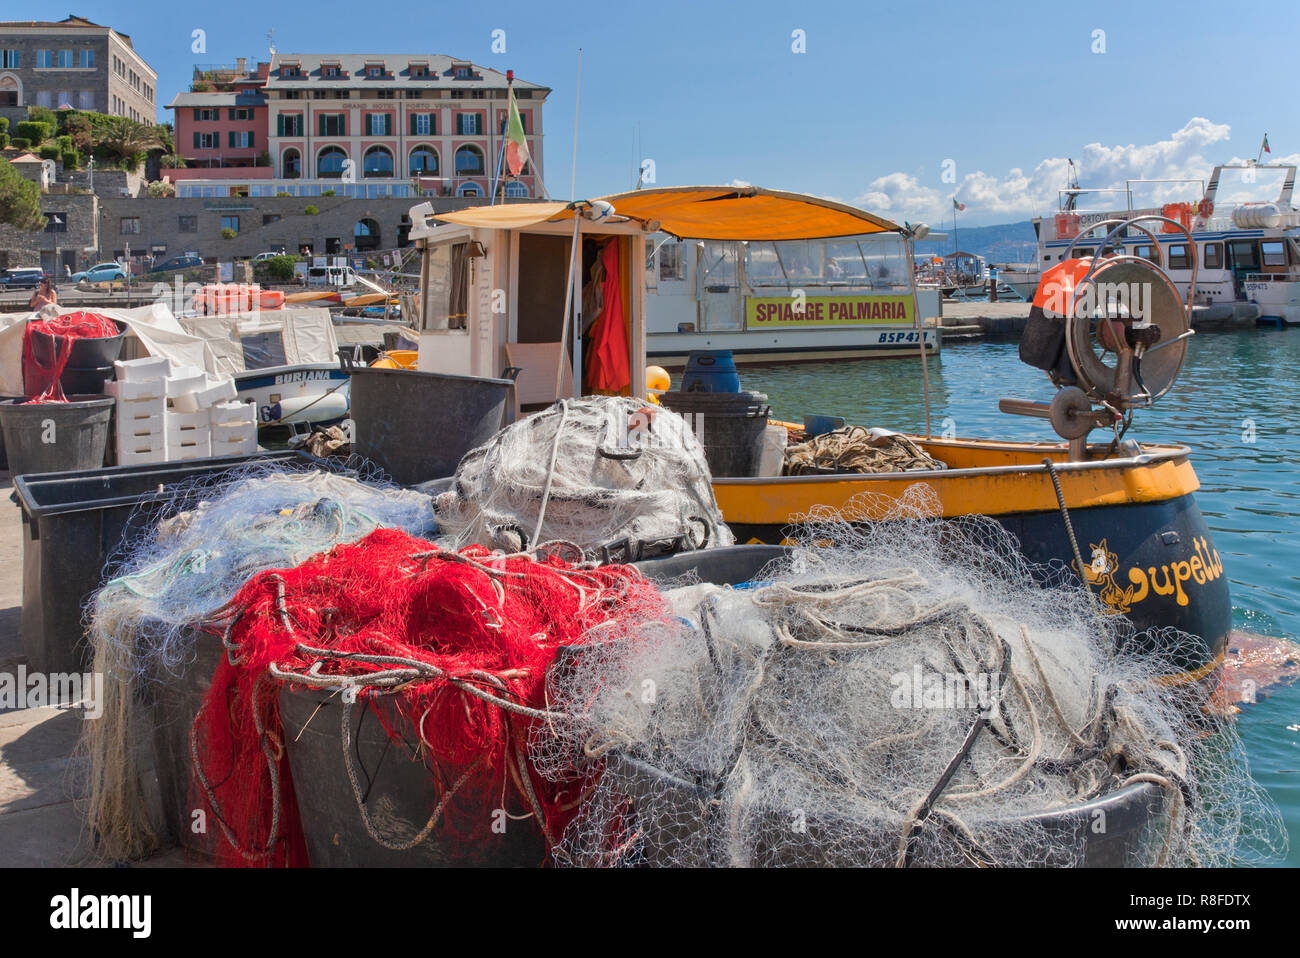 Barche e reti da pesca, via calata Doria, Portovenere, Italia. Segno sulla barca in background pubblicizza gite alle spiagge dell'isola di Palmeria. Foto Stock